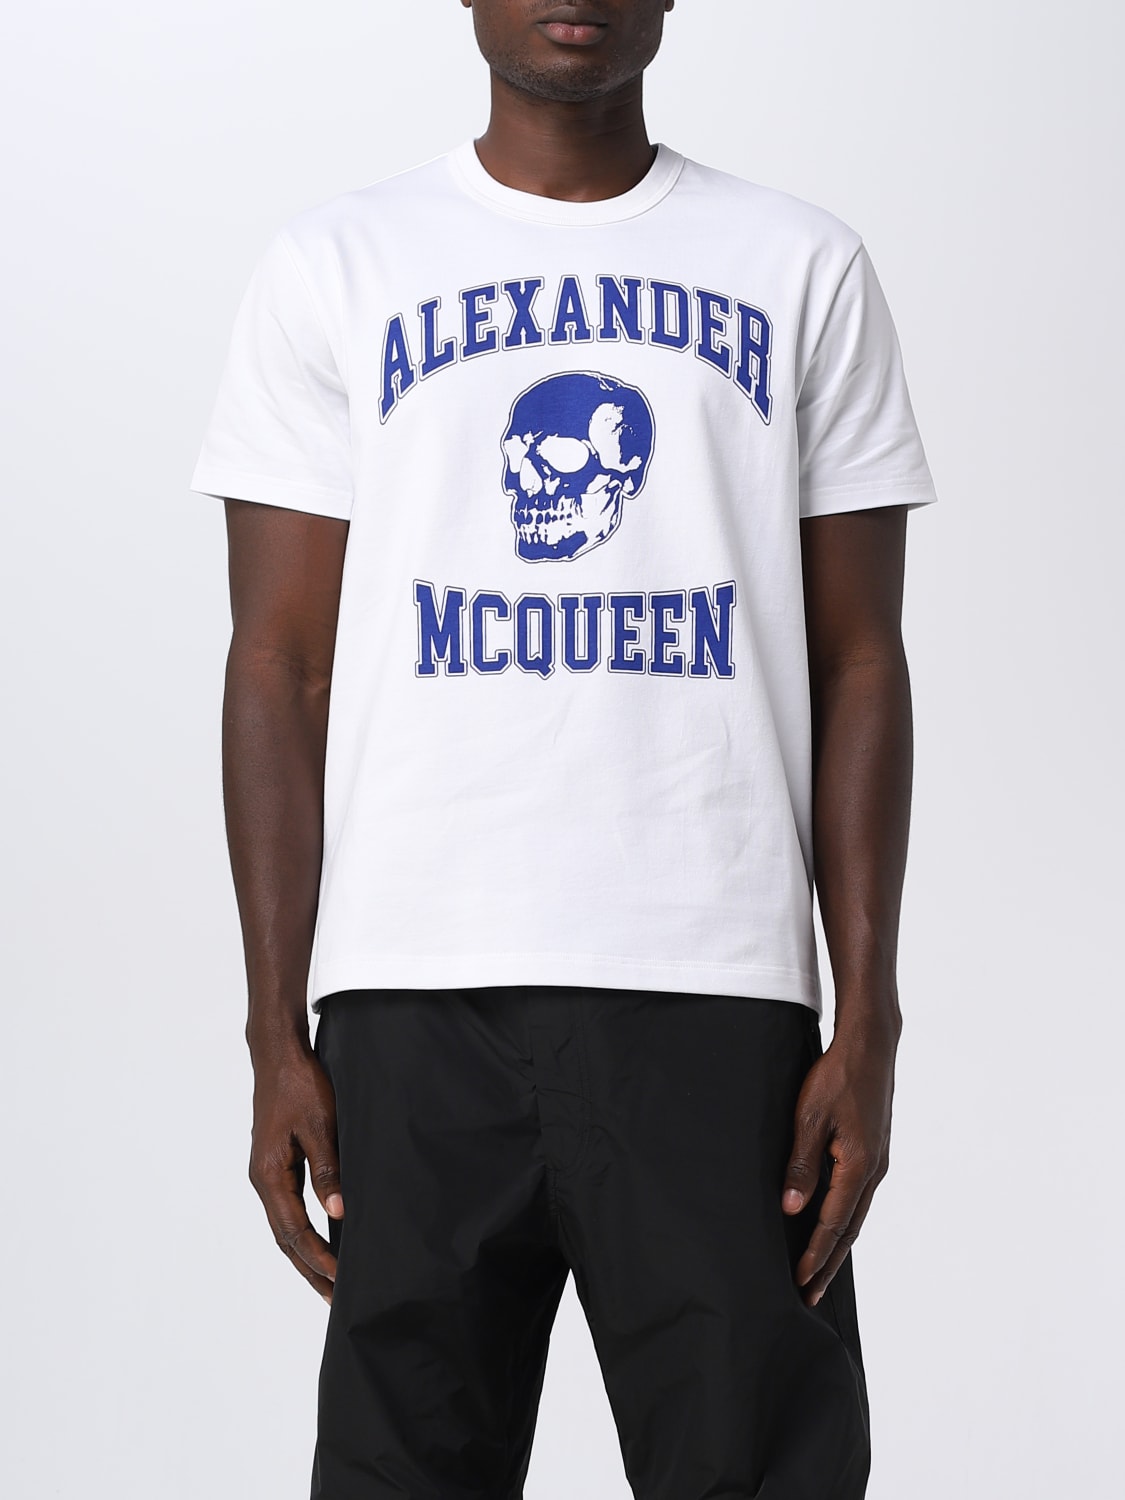 ALEXANDER MCQUEEN: t-shirt for man - White | Alexander Mcqueen t-shirt ...